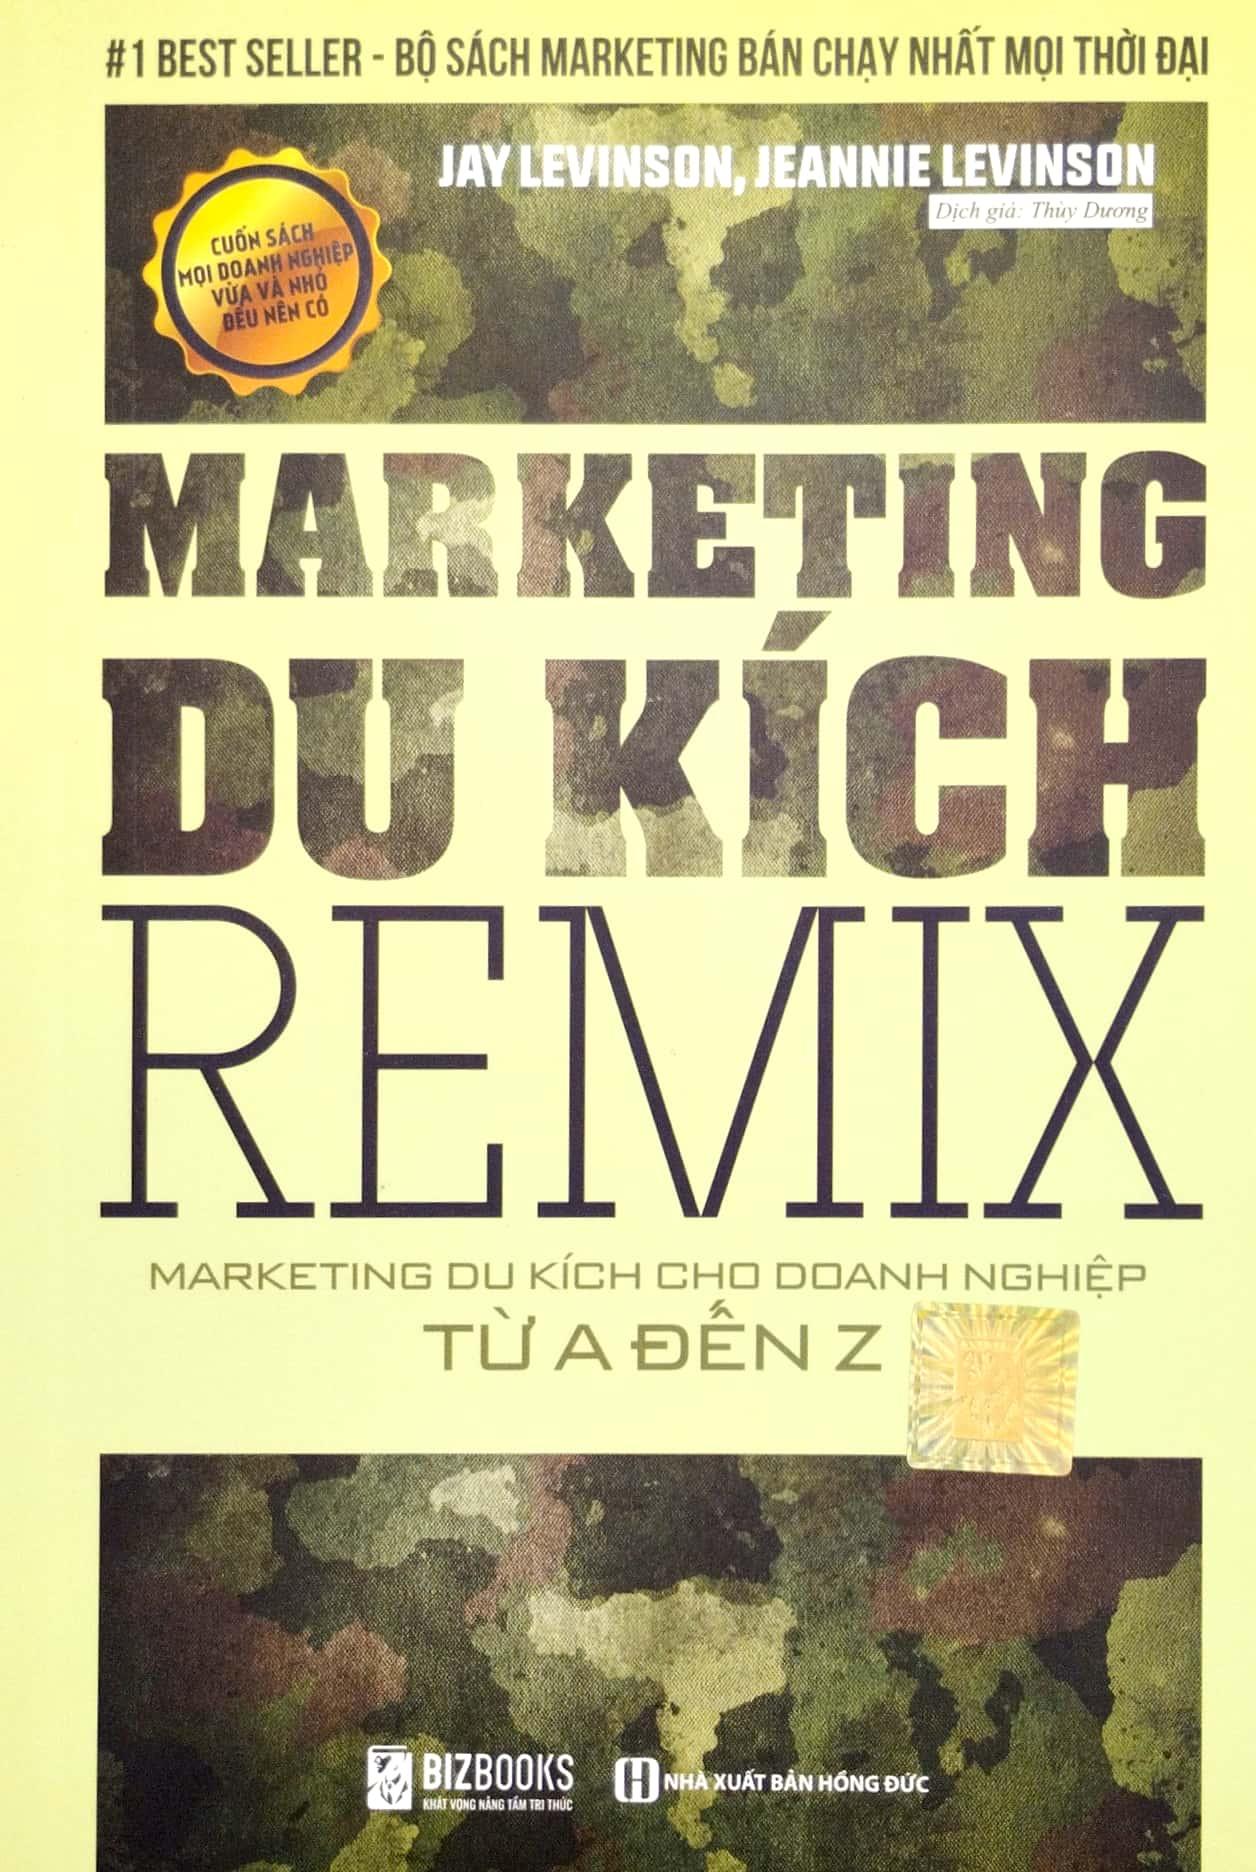 Marketing Du Kích Remix - Marketing Du Kích Cho Doanh Nghiệp Từ A Đến Z